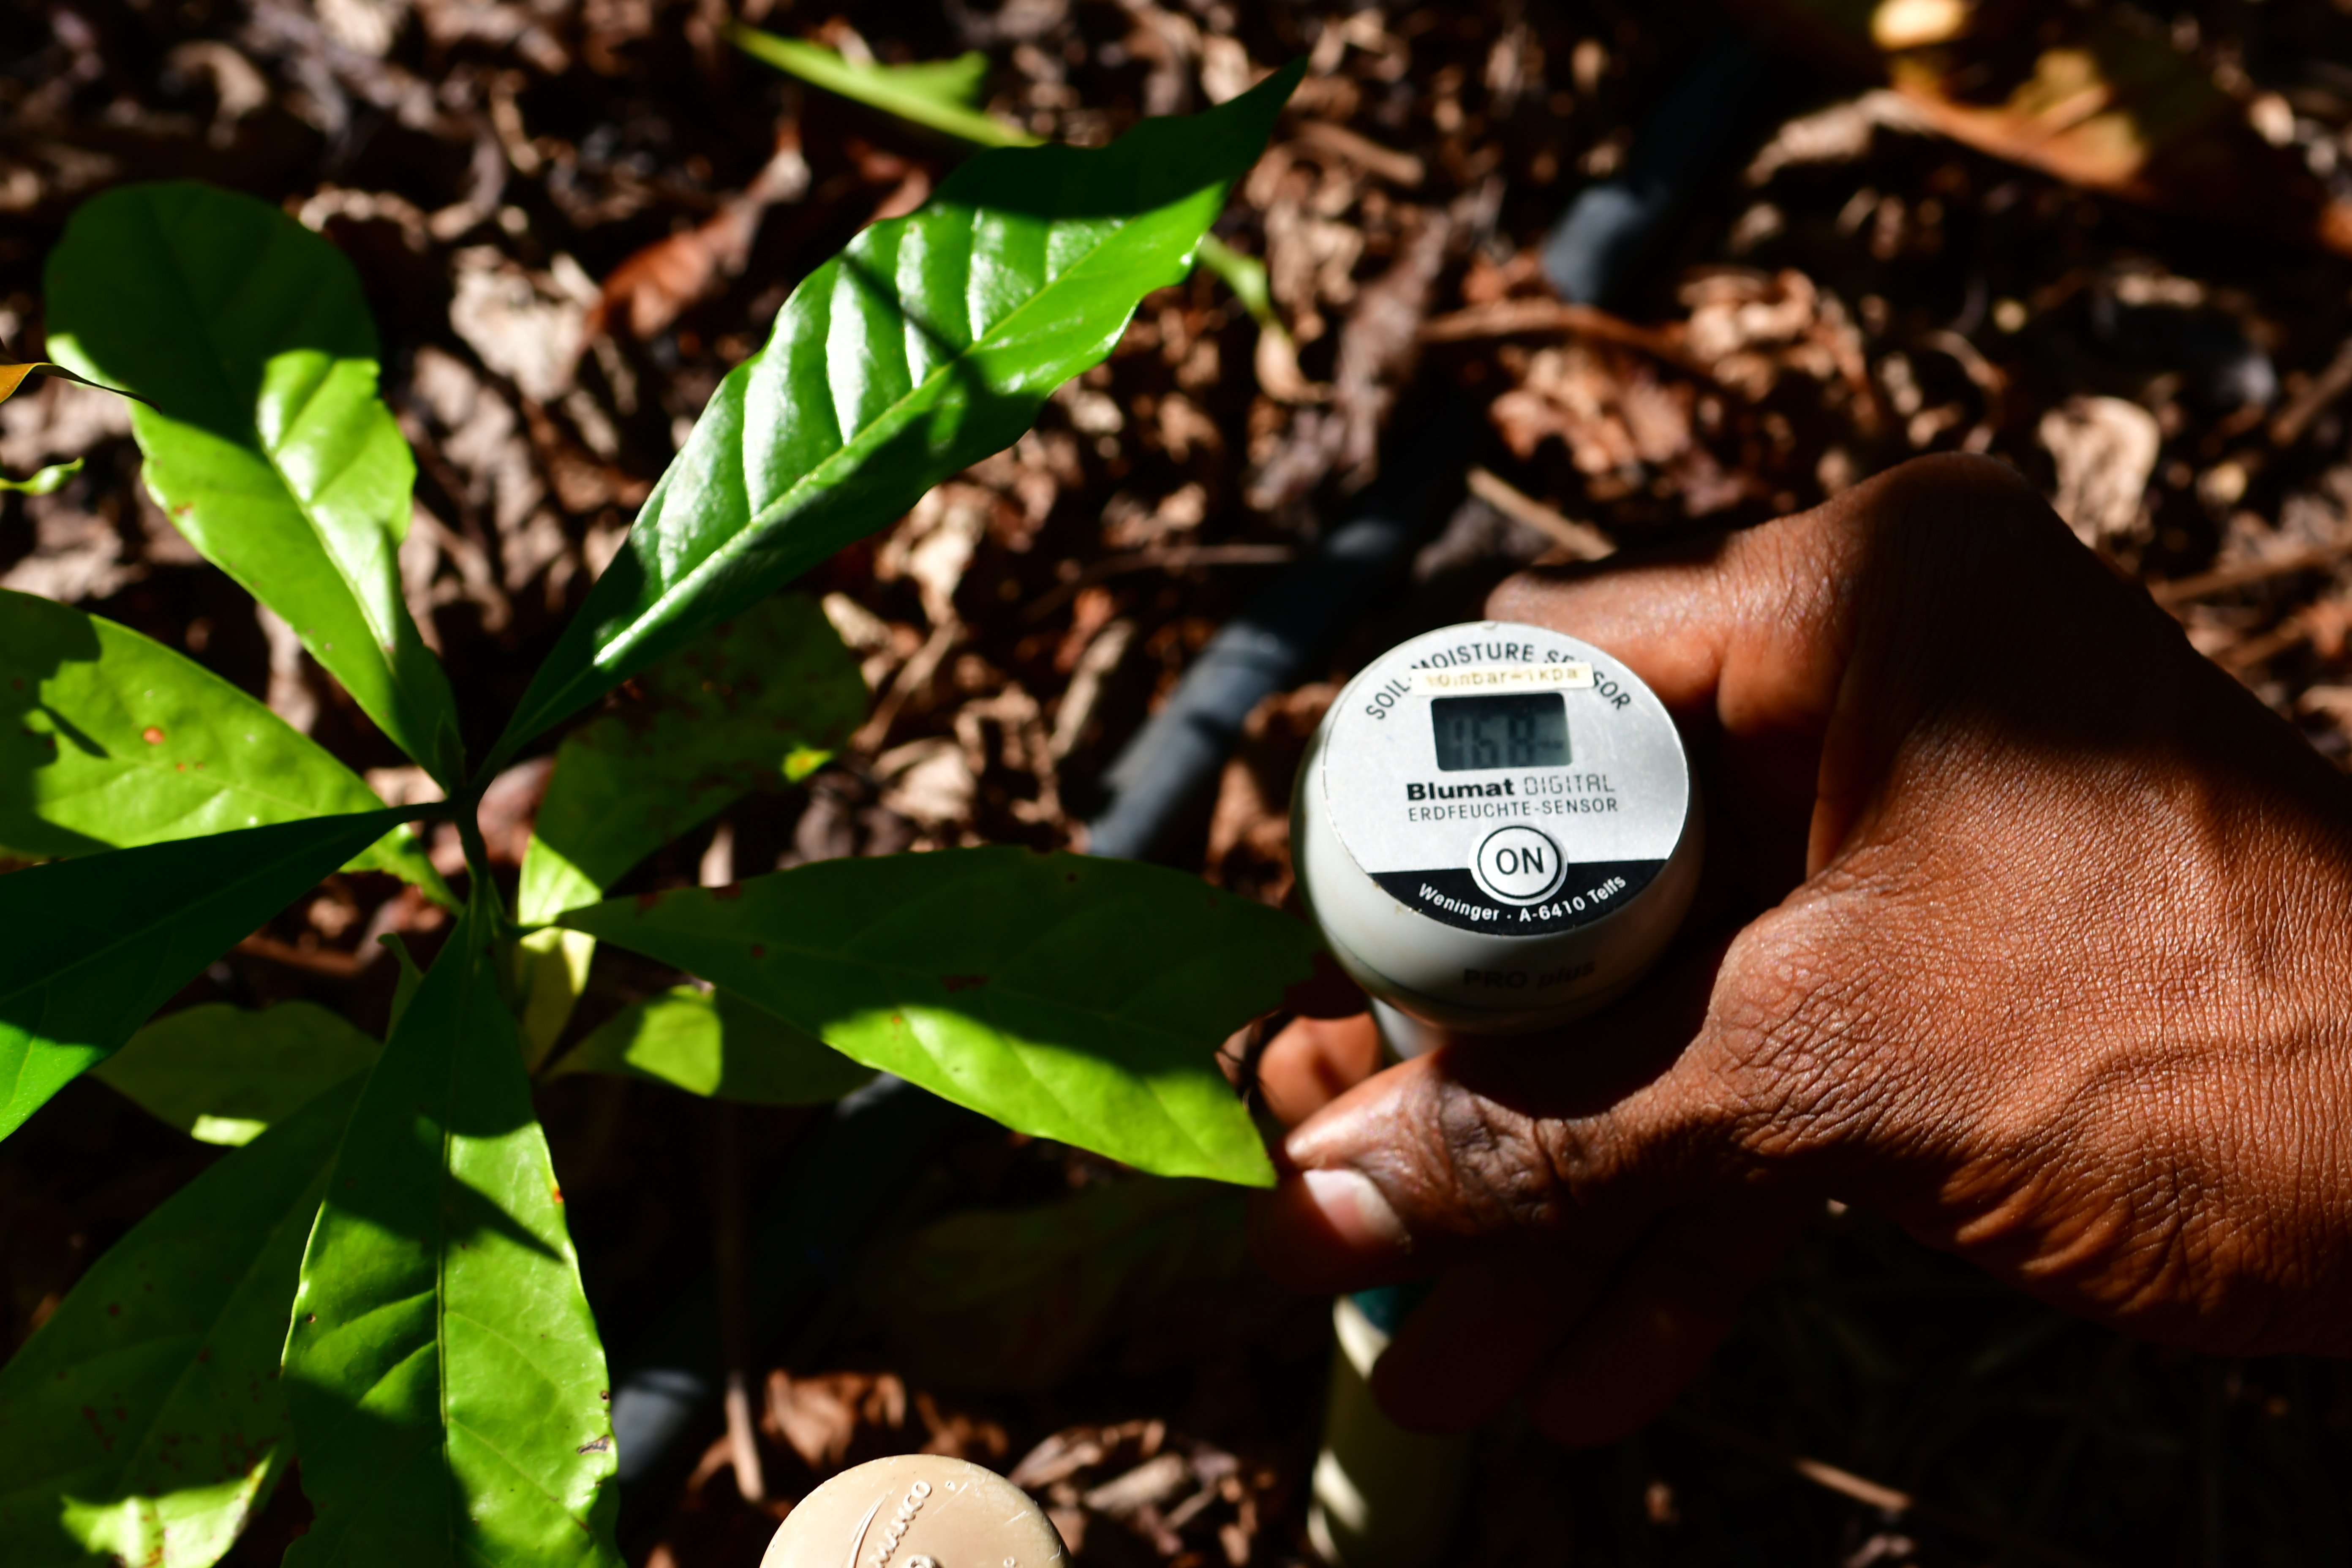 Agronegócio 5.0: Fazenda Três Marias, em Linhares, aposta em tecnologia, como uso de sensores, além de integração floresta, lavoura de café, milho coco, frutas e milho e criação de gado. Negócio é administrado por Leticia Lindenberg